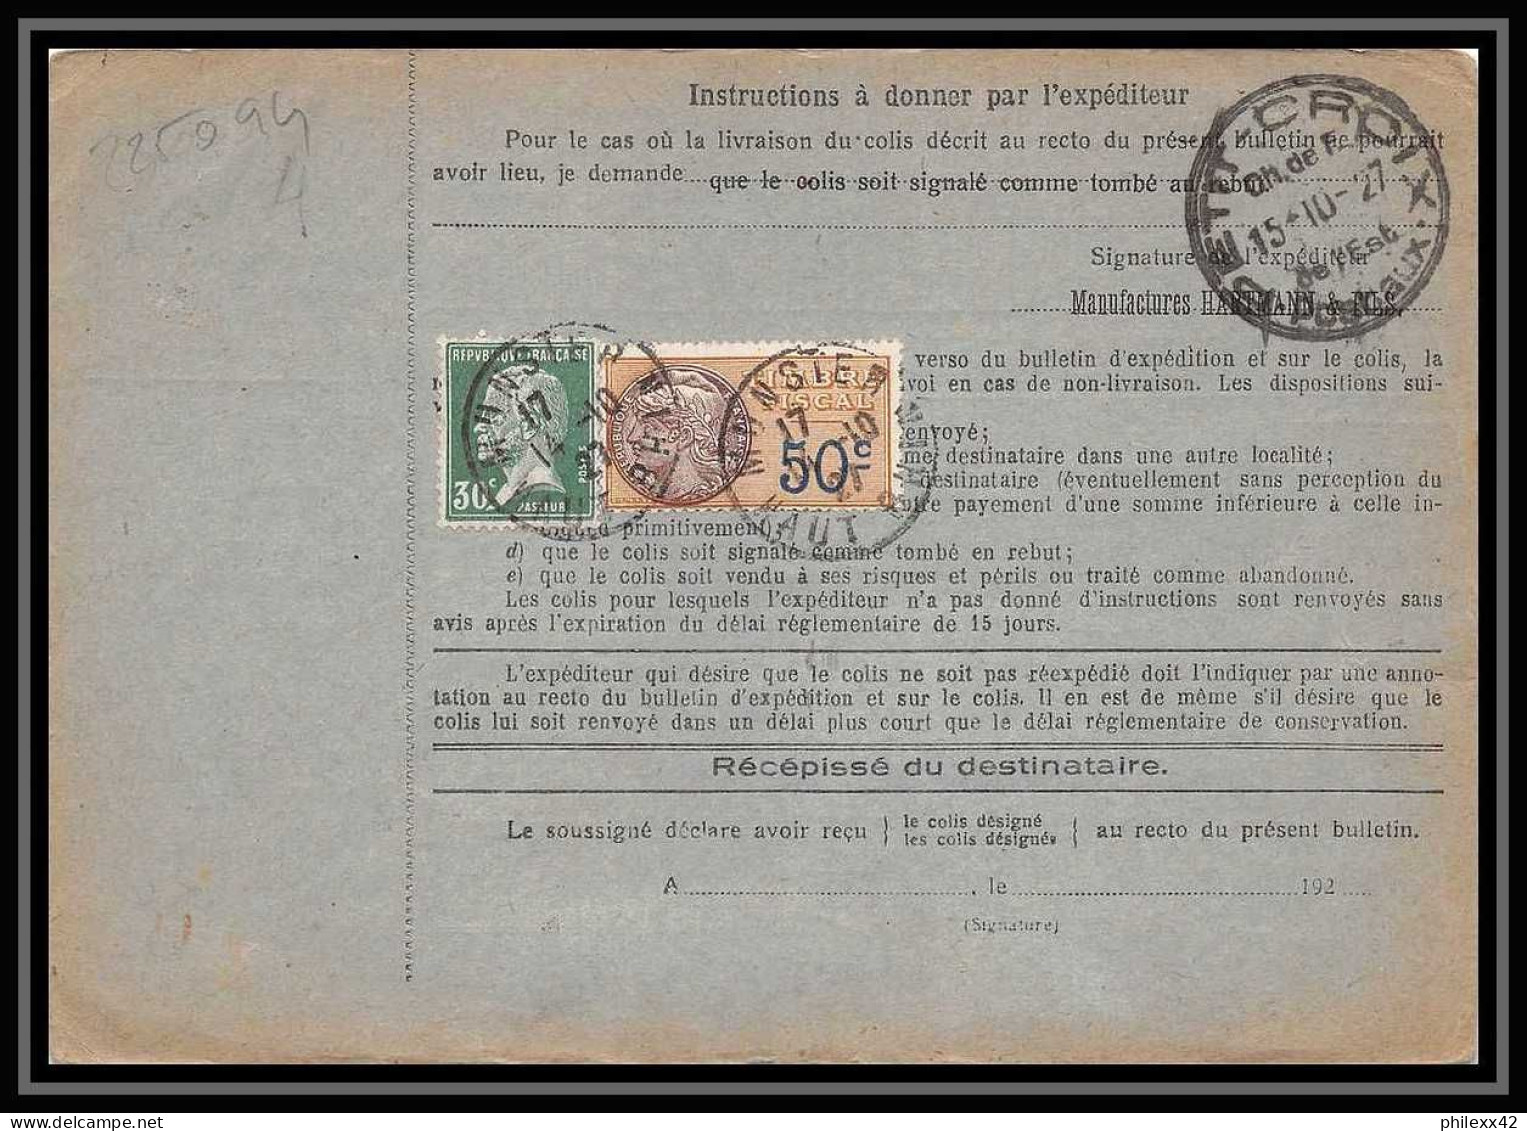 25094 Bulletin D'expédition France Colis Postaux Fiscal Haut Rhin - 1927 Munster Semeuse + Merson 123 Valeur Déclarée - Covers & Documents